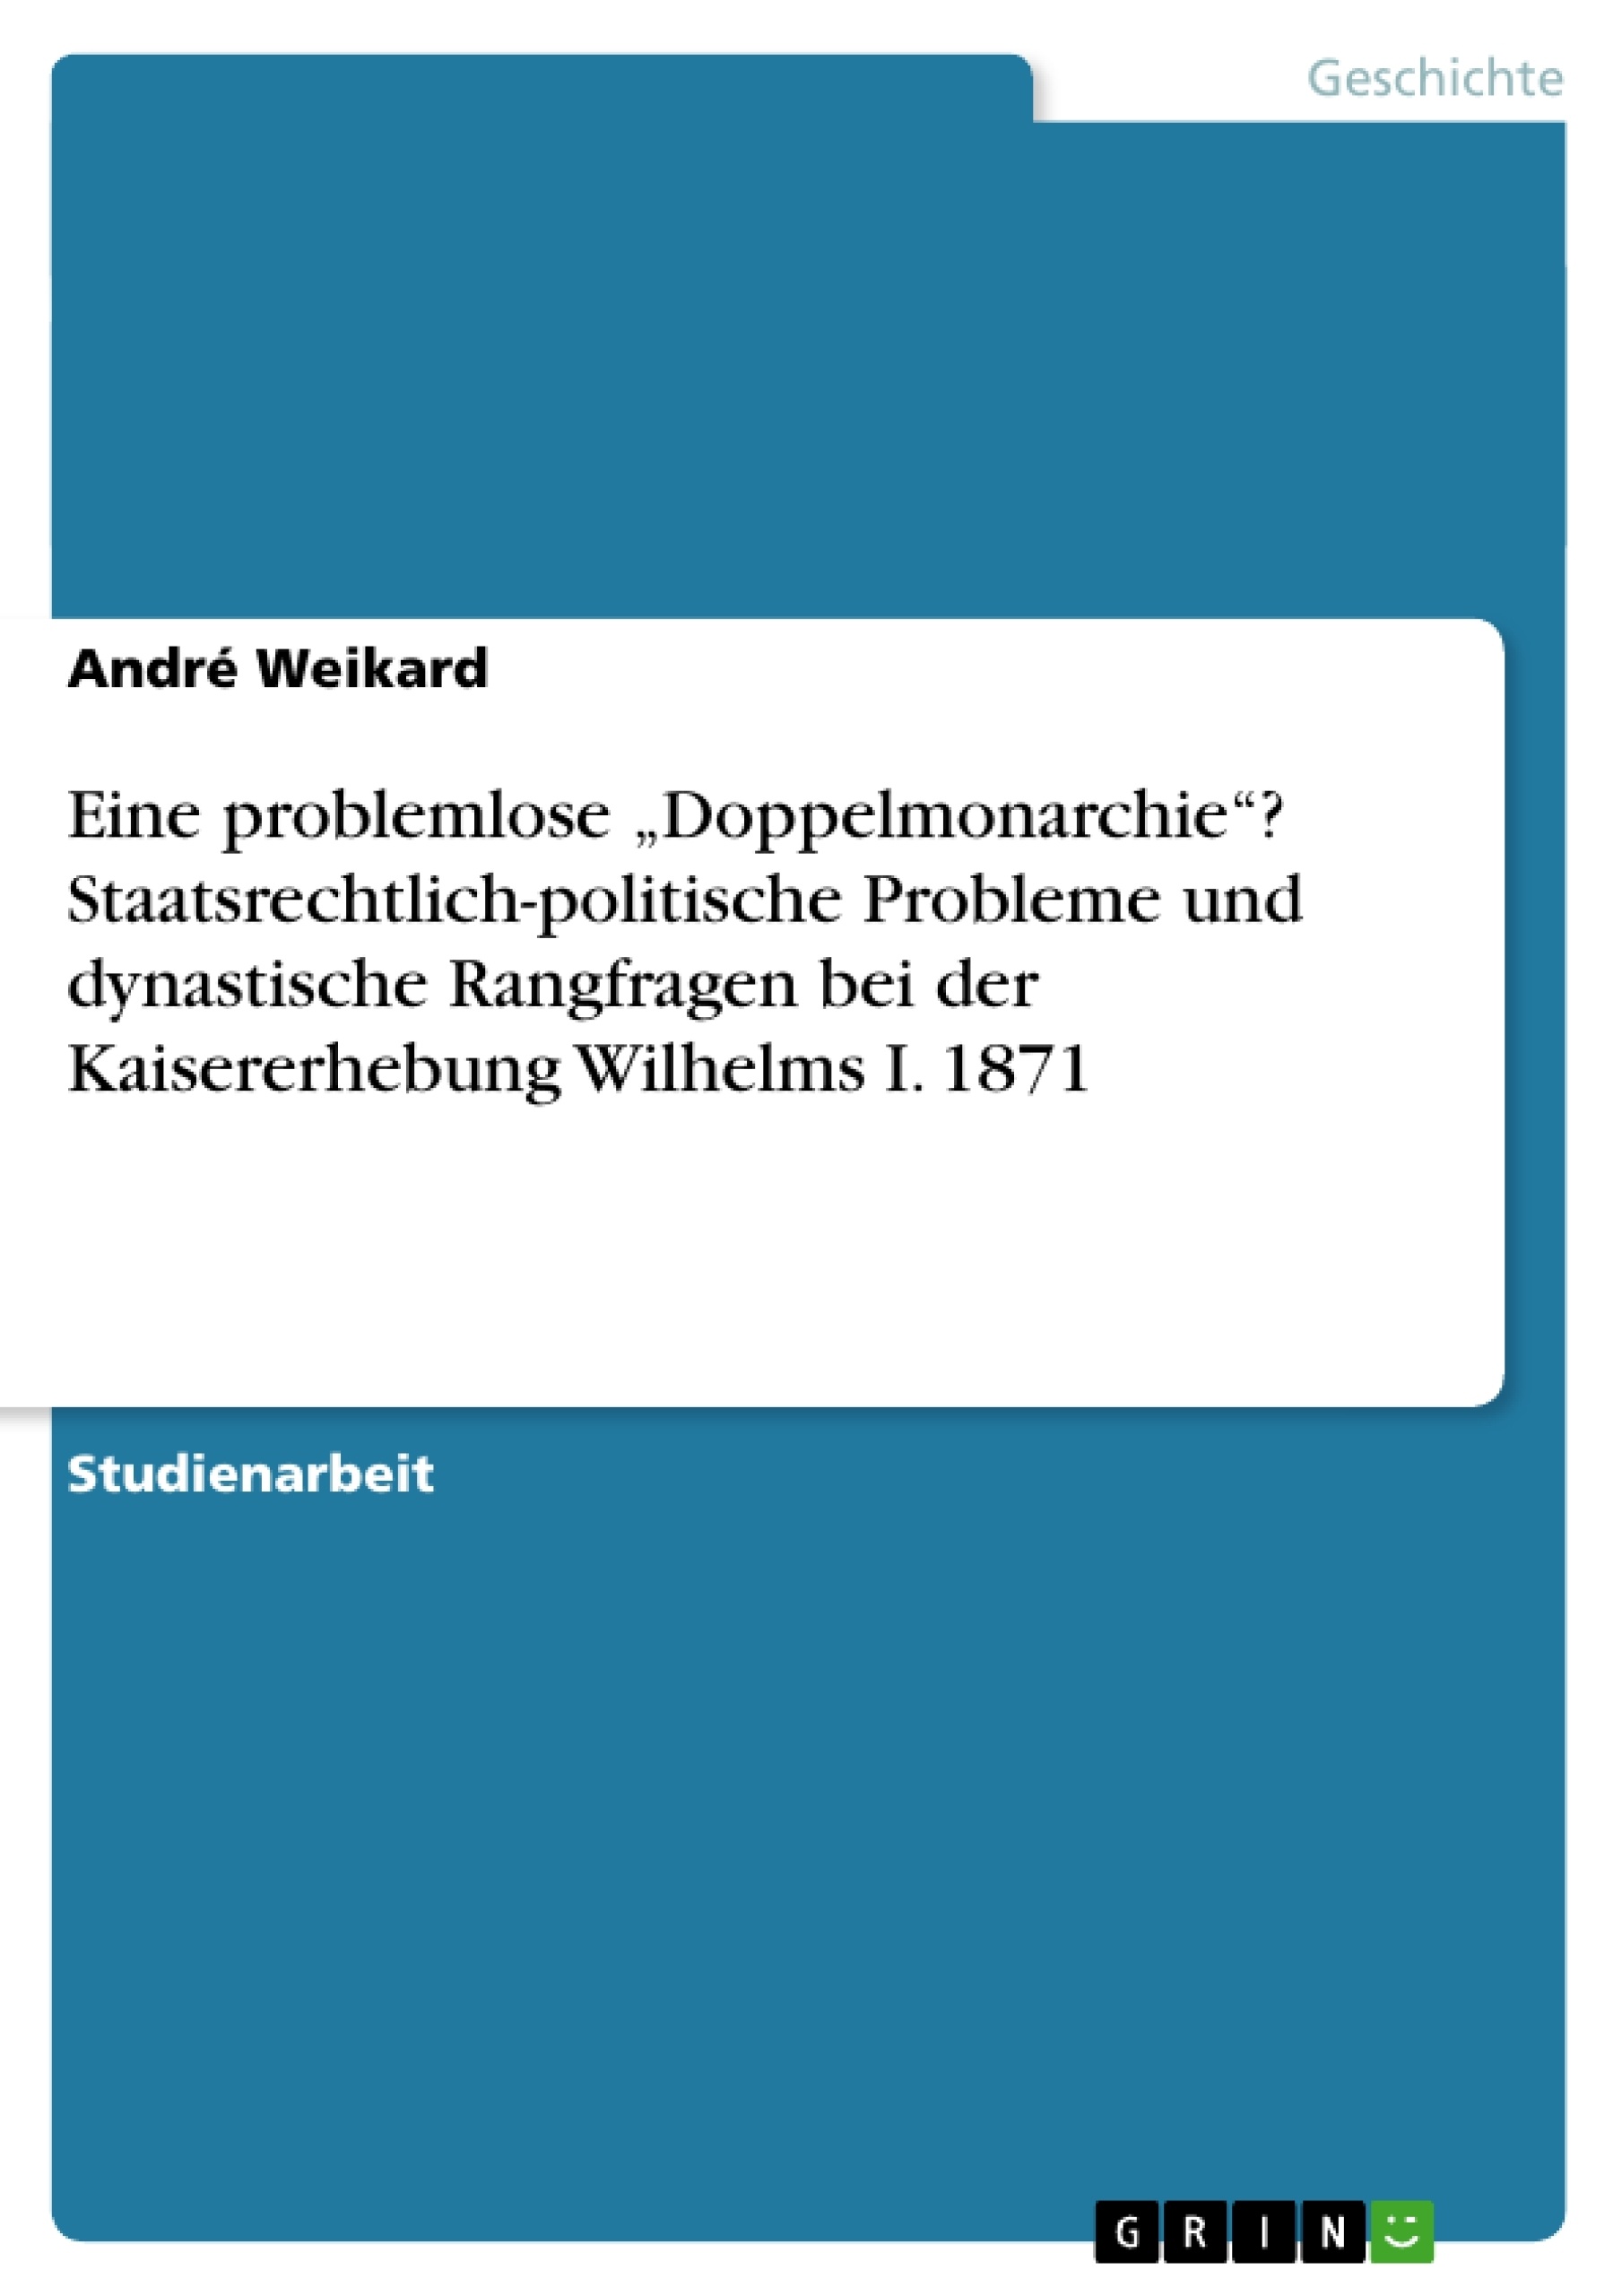 Title: Eine problemlose „Doppelmonarchie“? Staatsrechtlich-politische Probleme und dynastische Rangfragen bei der Kaisererhebung Wilhelms I. 1871